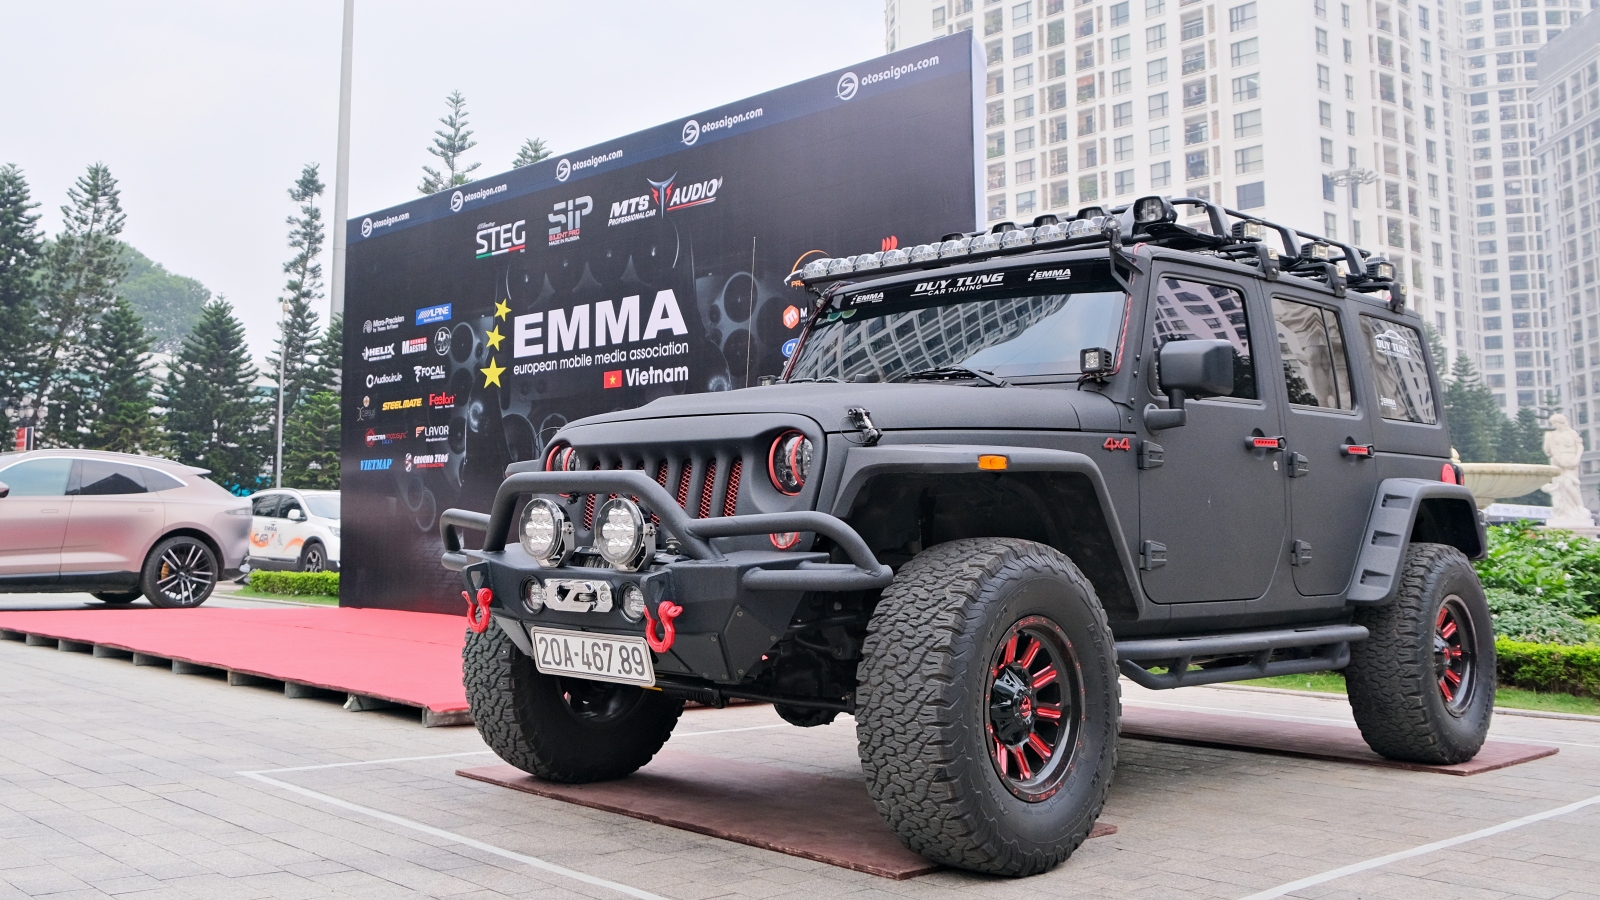 Độ xe Duy Tùng - Thí sinh kỳ cựu của sự kiện EMMA Miền Bắc 2022 - 1